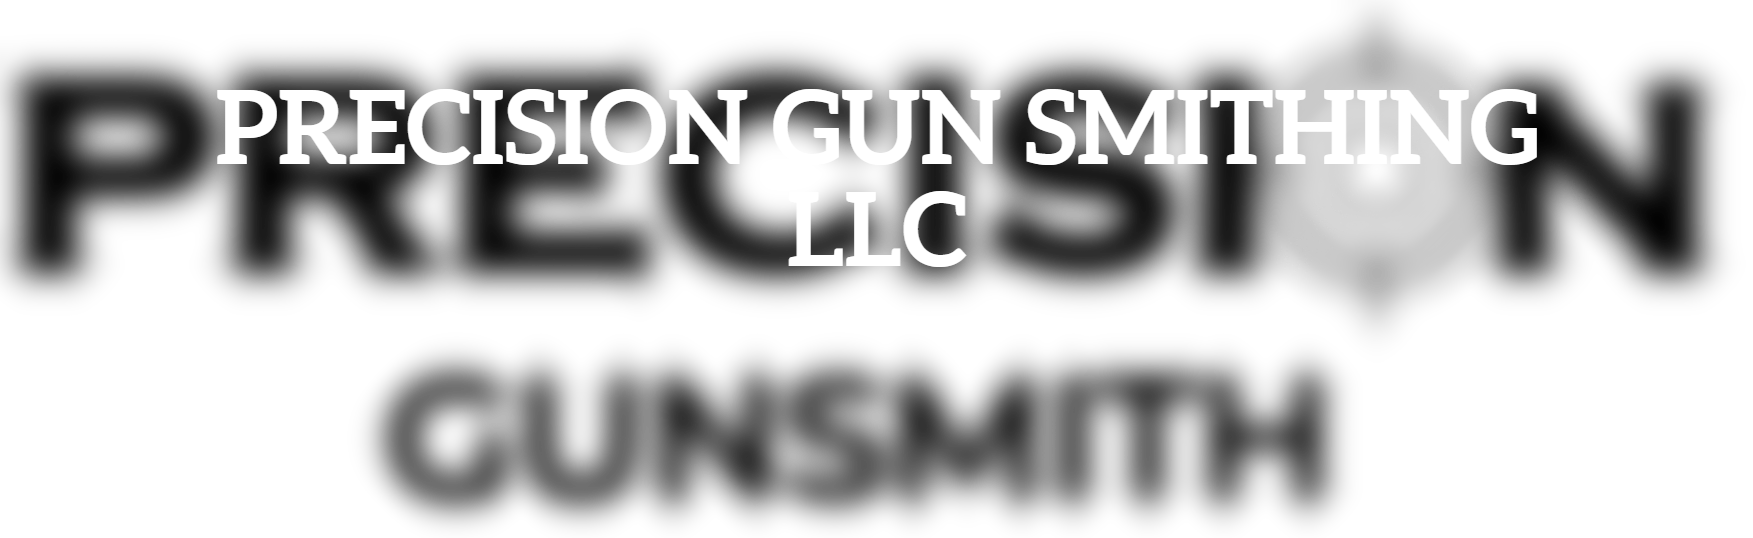 PRECISION GUN SMITHING LLC